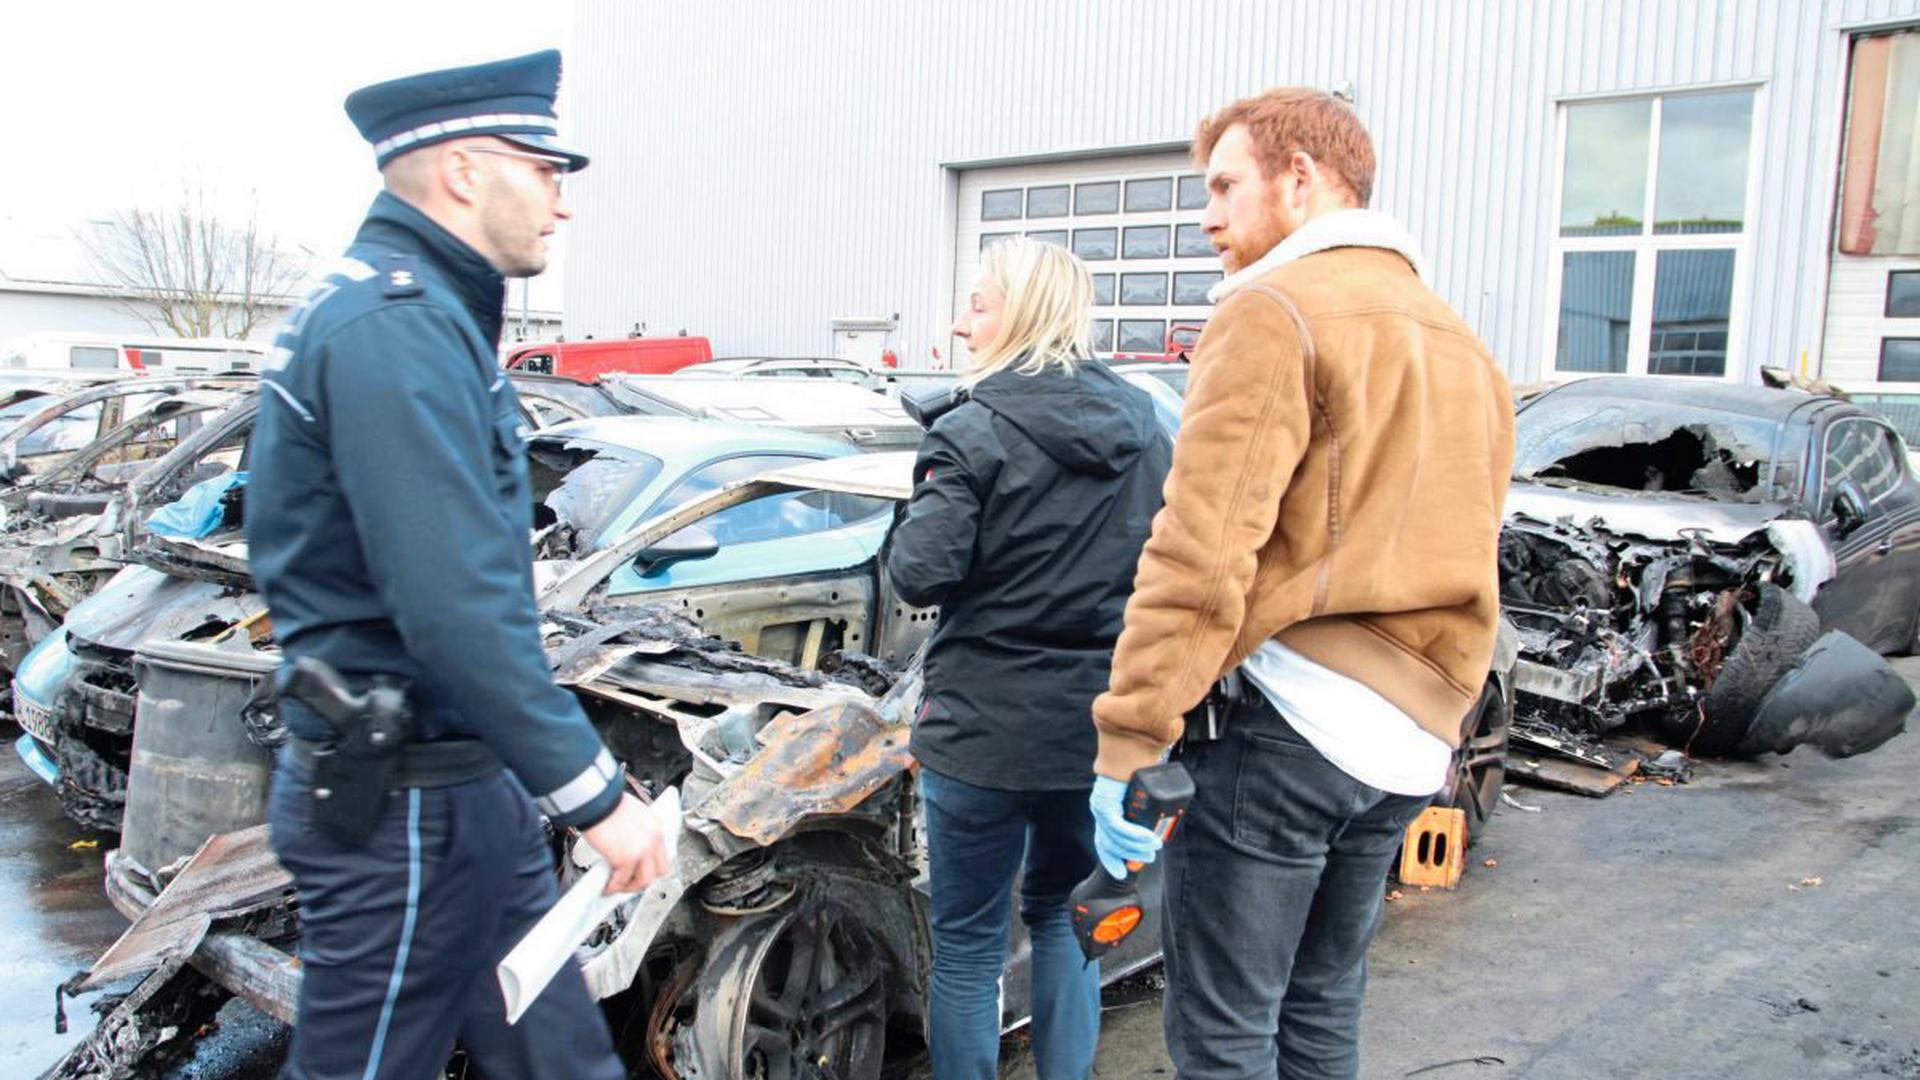 Am Tag nach dem Brand untersuchen Ermittler die Autowracks. Der Gesamtschaden beträgt mehrere hunderttausend Euro.